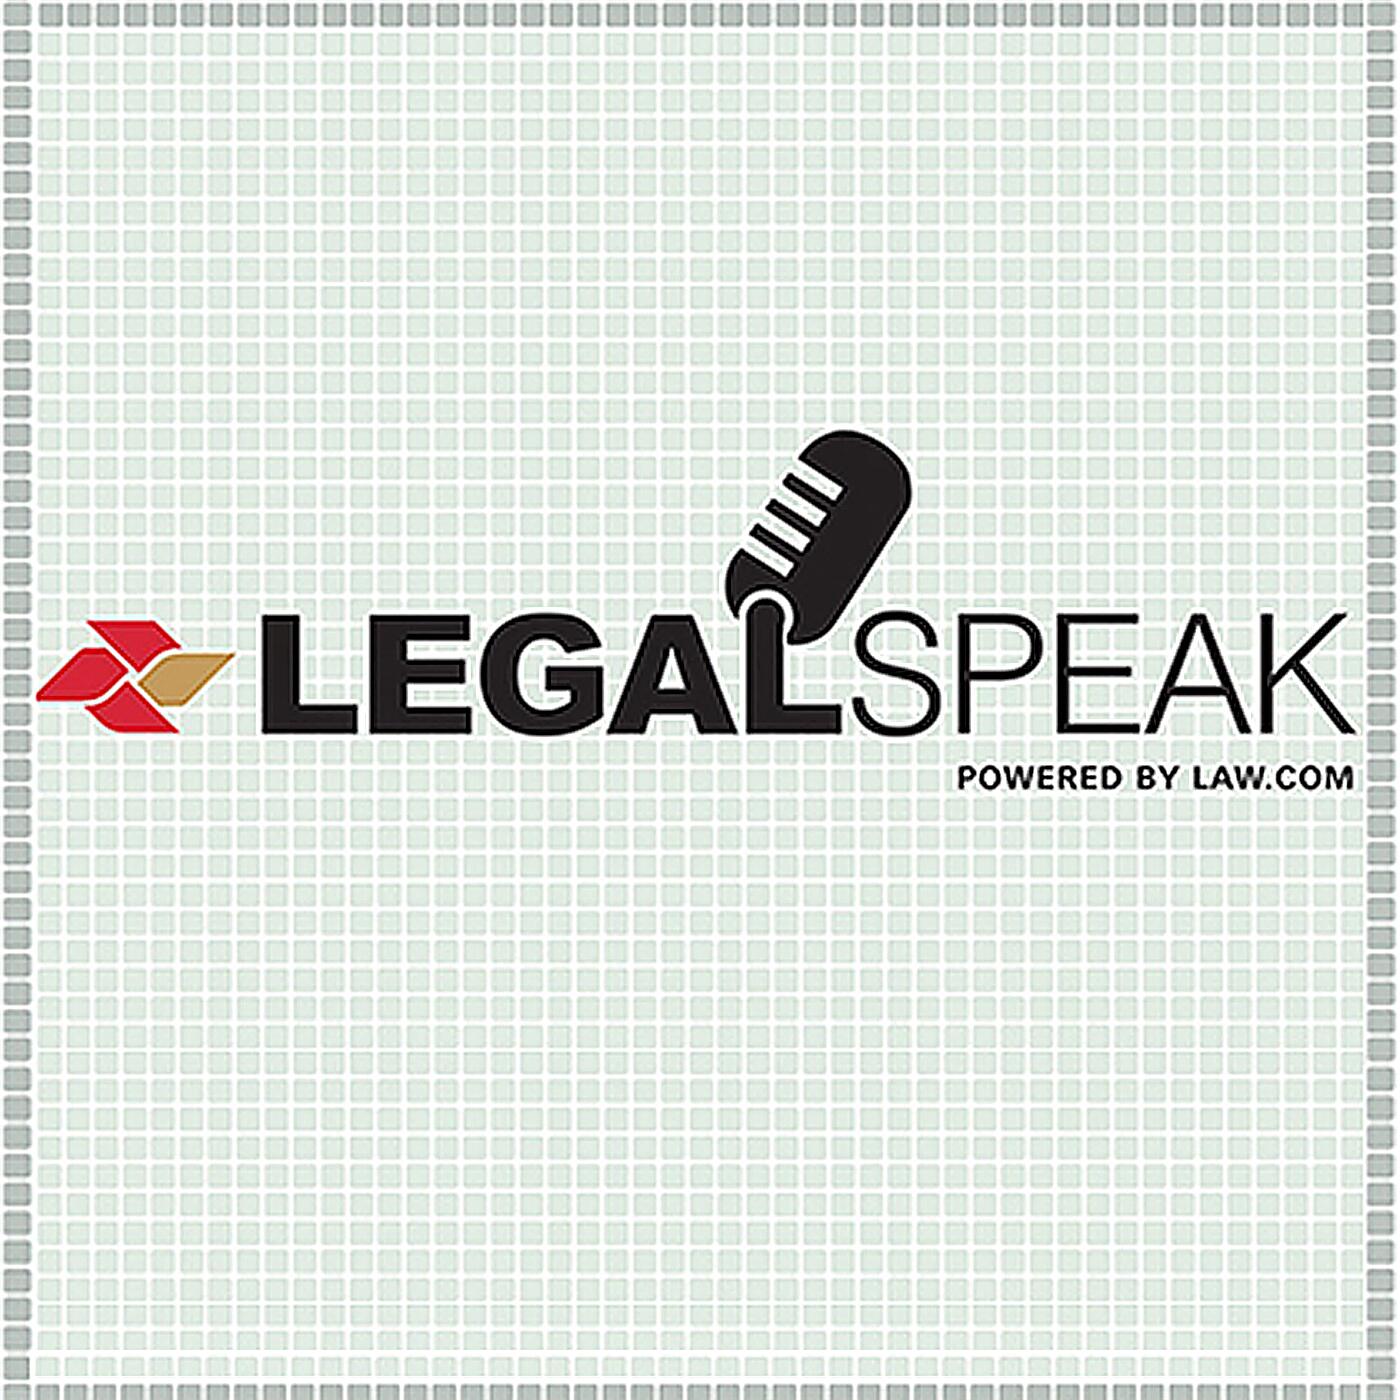 Law speak. Legal speak. Логотип ЛИНИНГ.